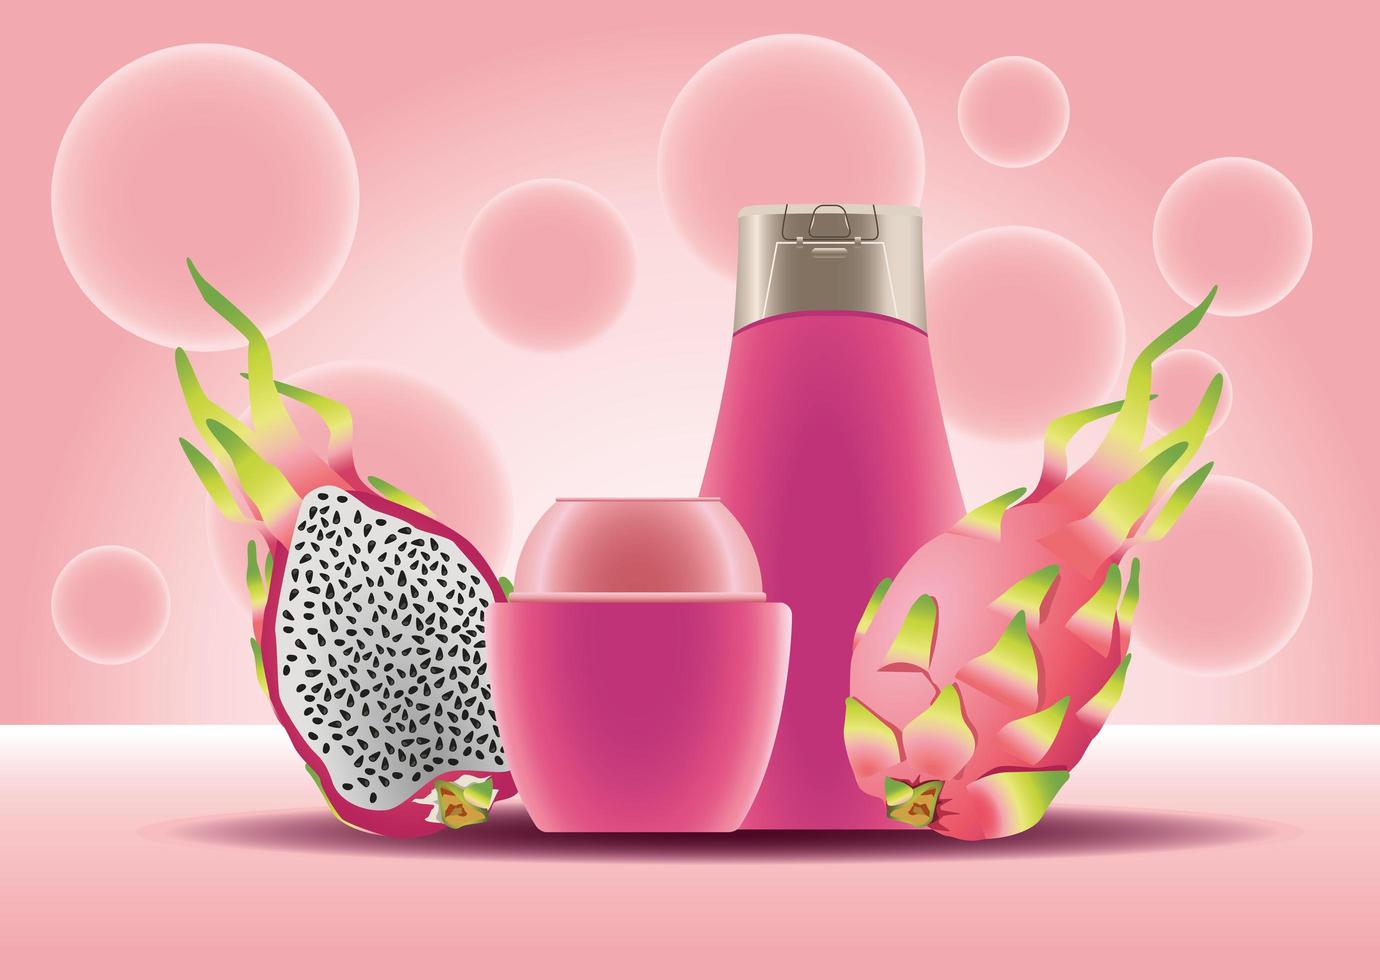 hudvårdspott- och flaskrosa produkter och drakefrukter vektor